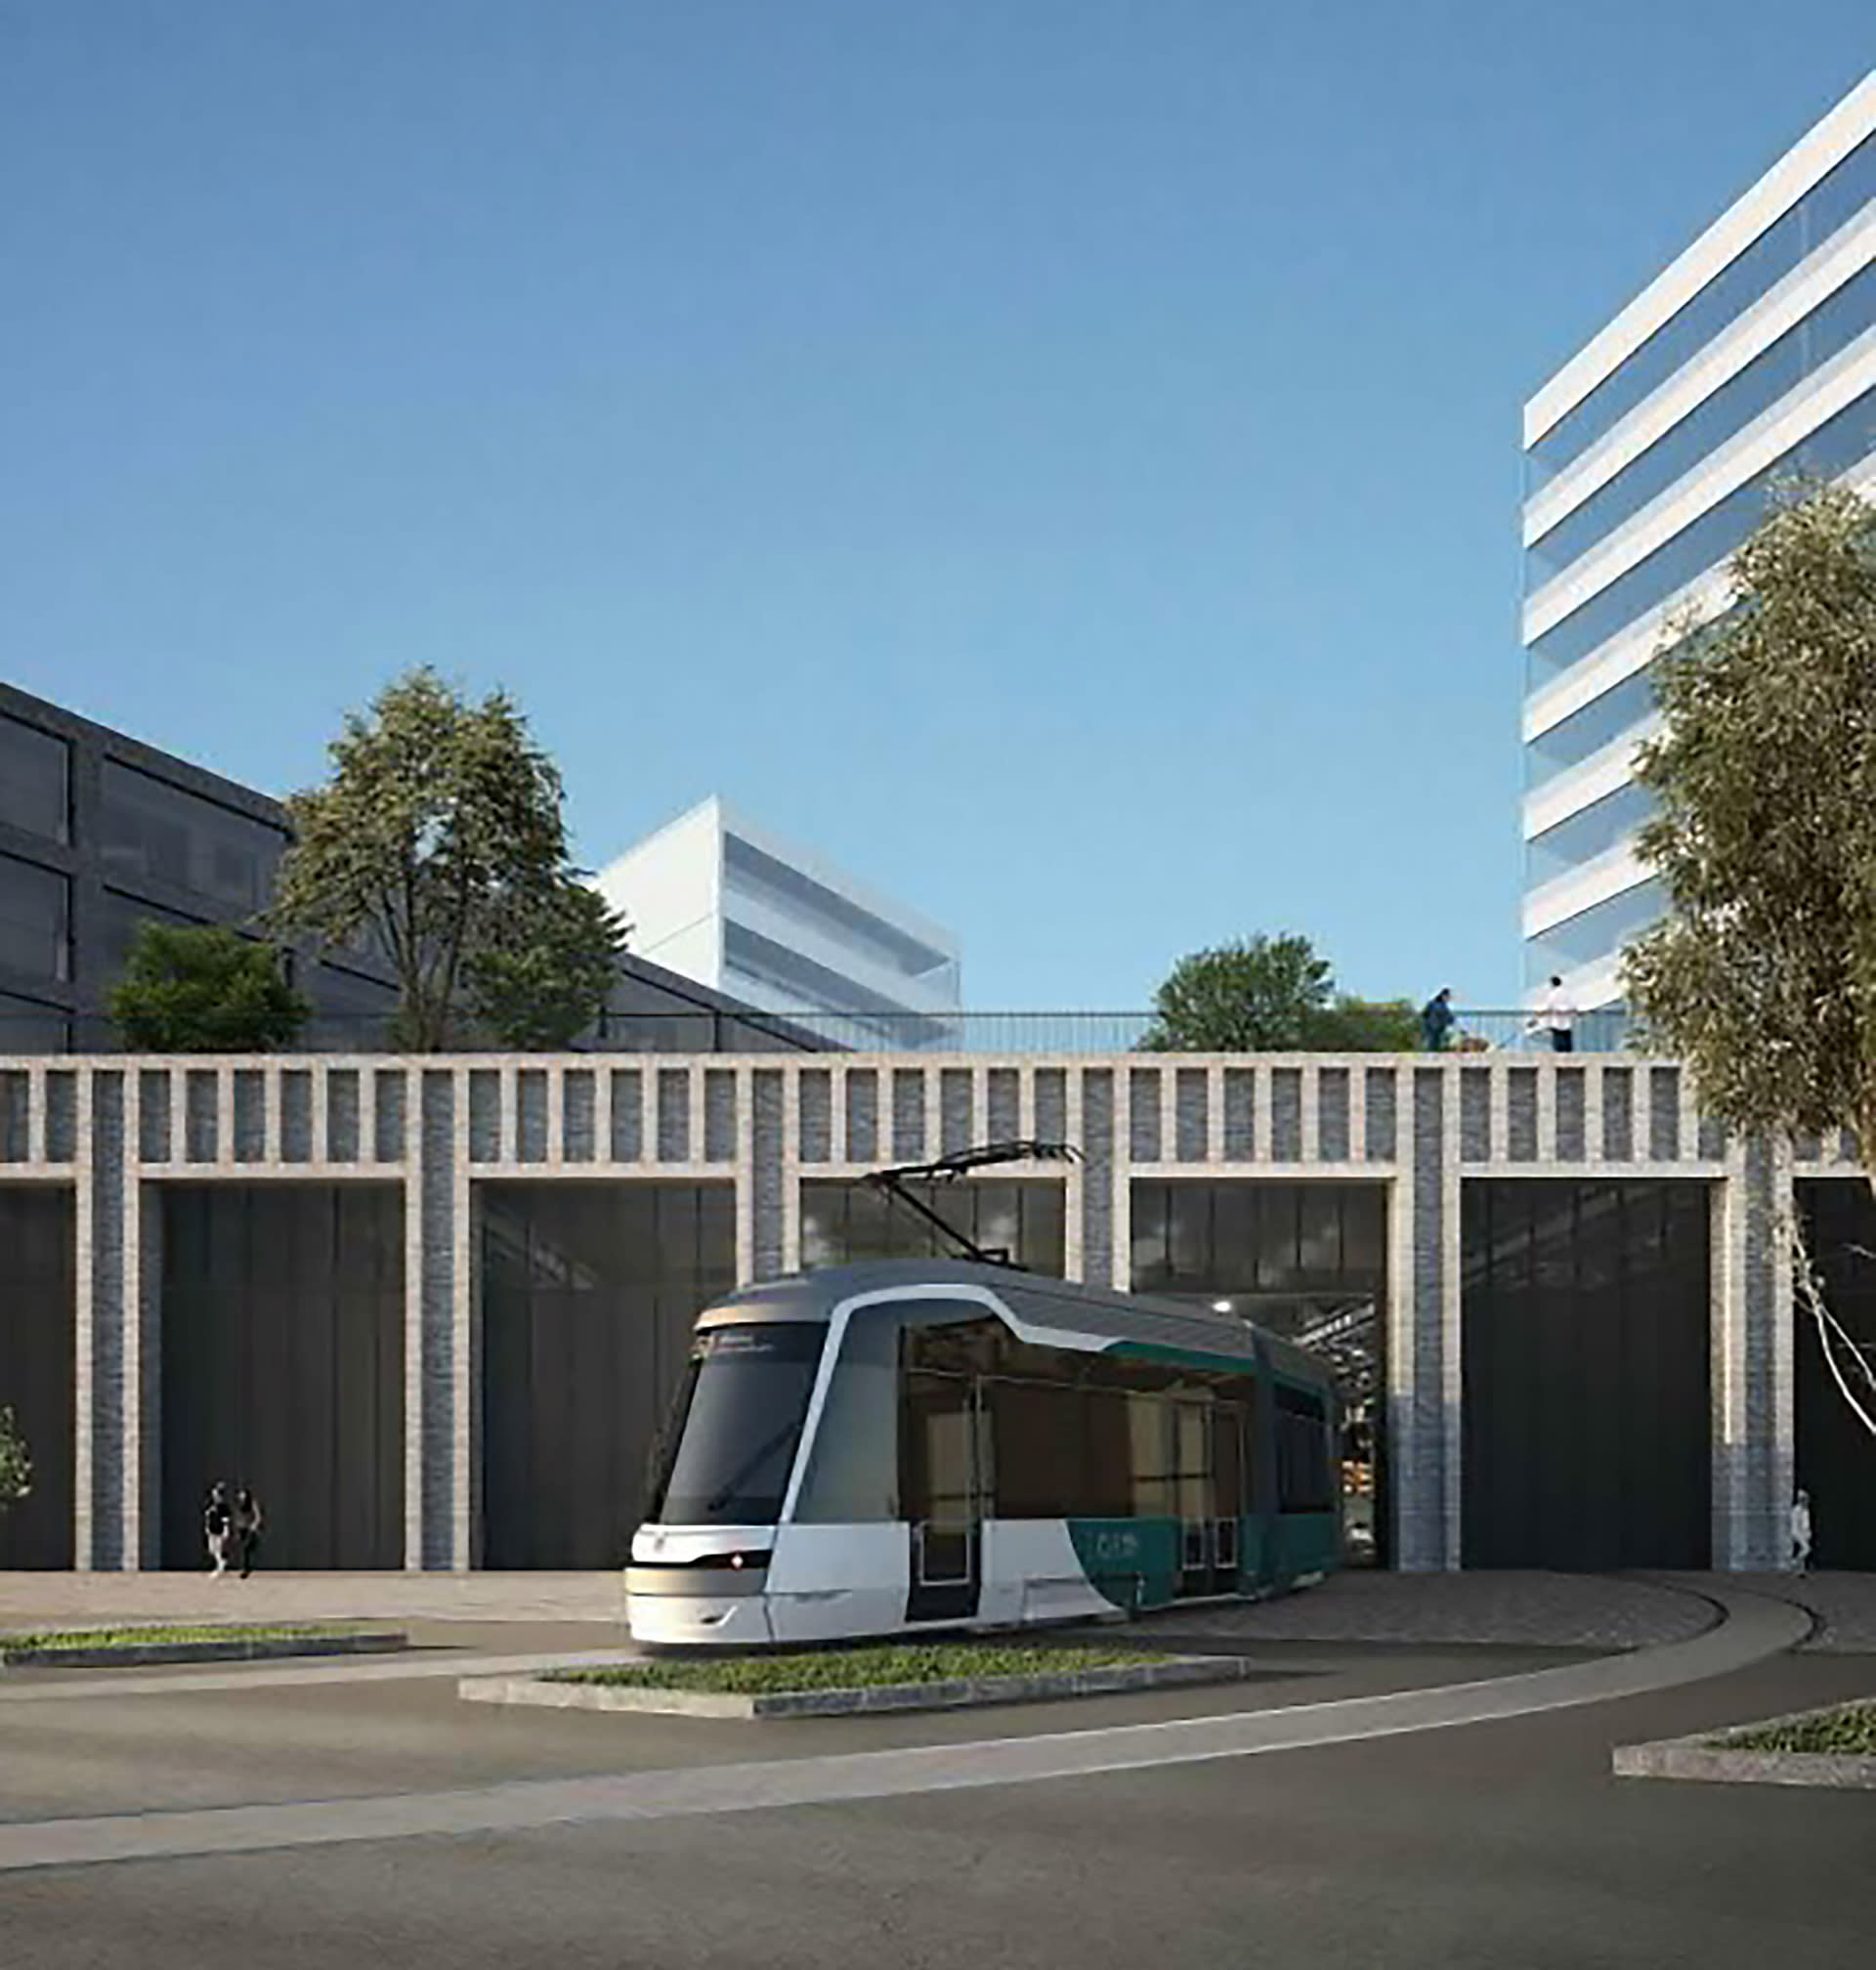 Hybrid tram warehouse – shopping center – designed for Helsinki